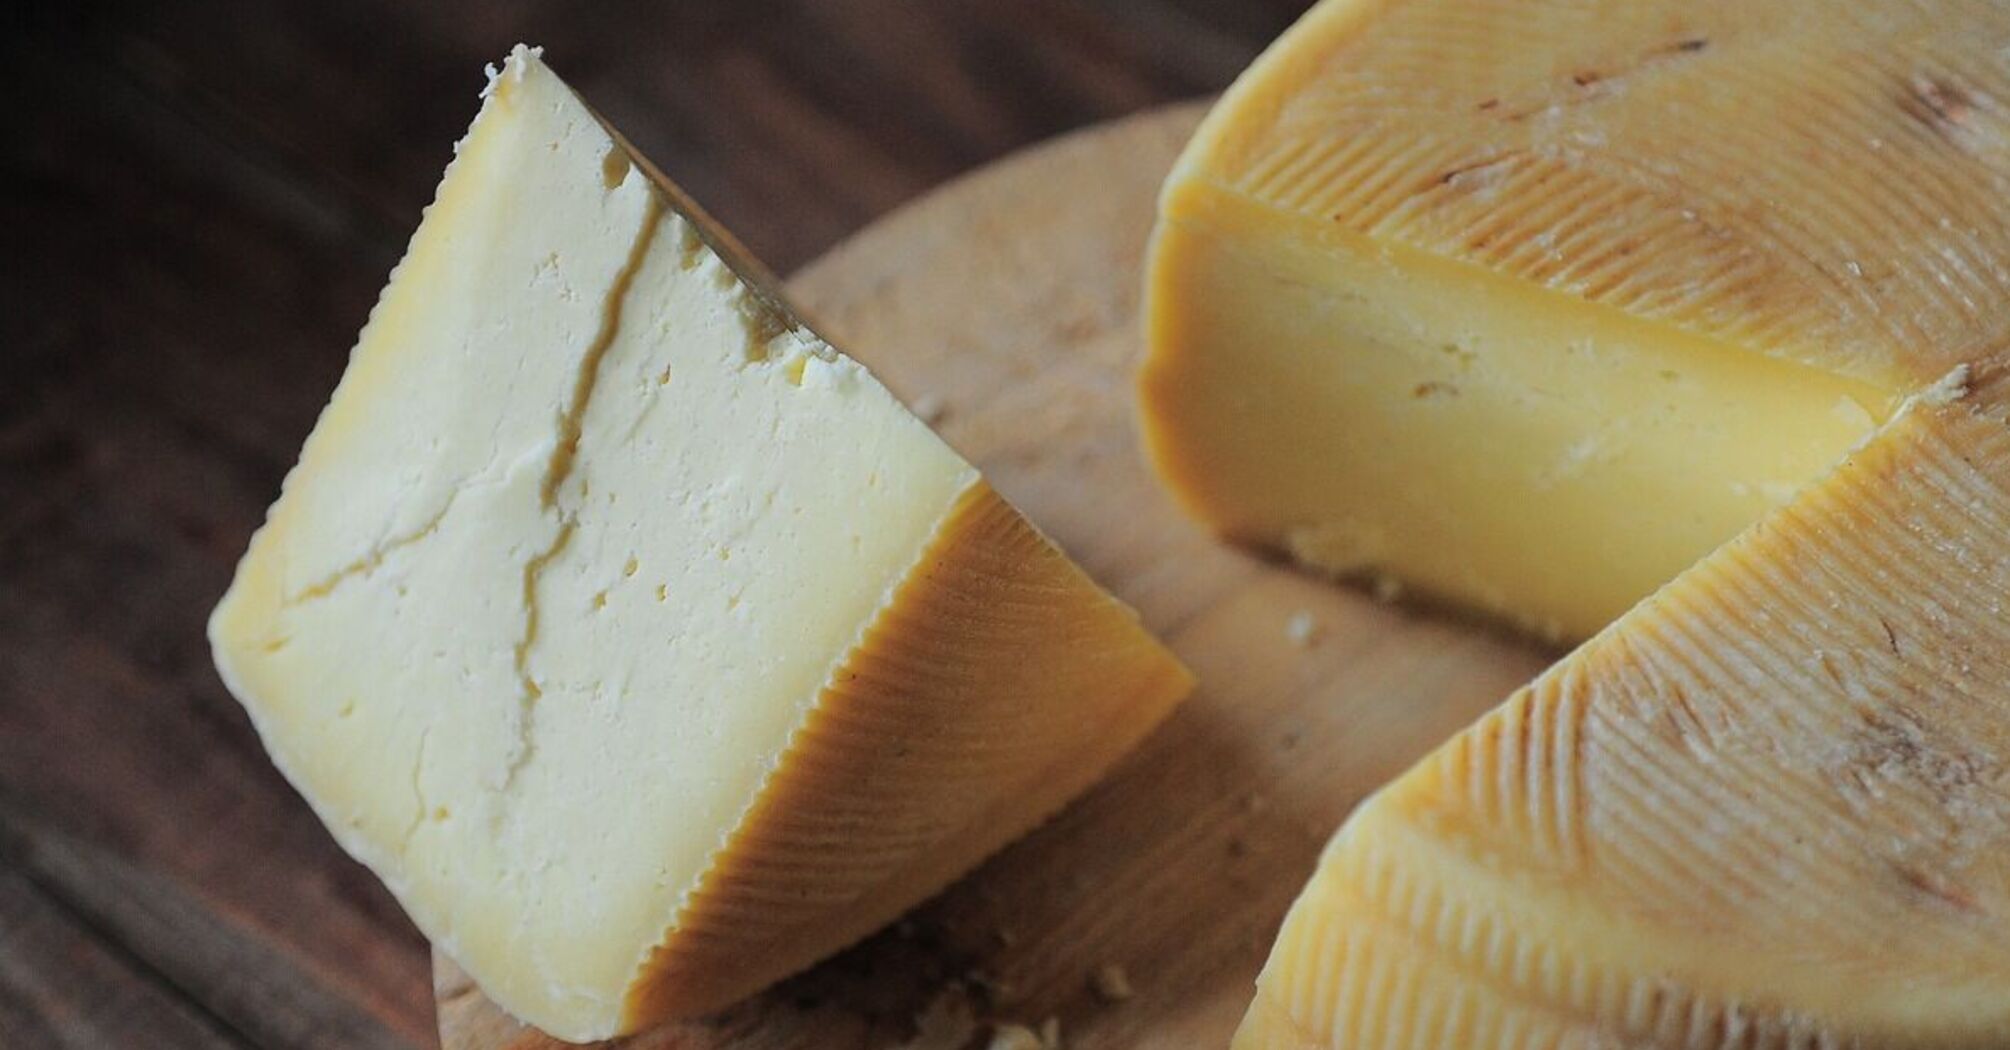 Не спешите класть в корзину: как быстро оценить качество сыра перед покупкой